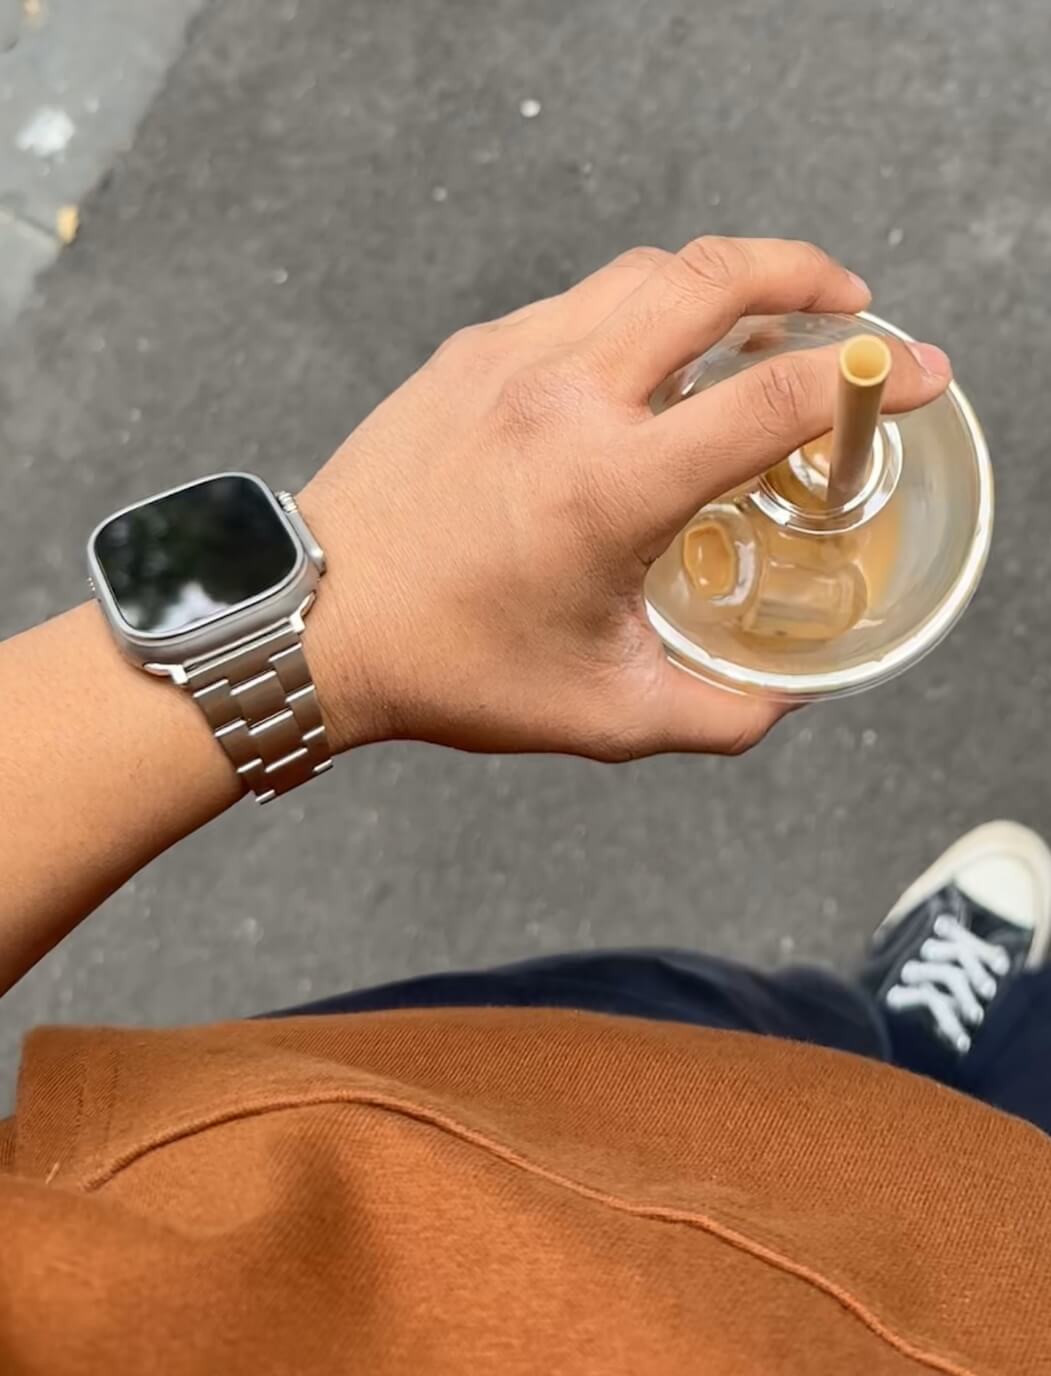 Apple Watch Ultra: Should You Buy It?